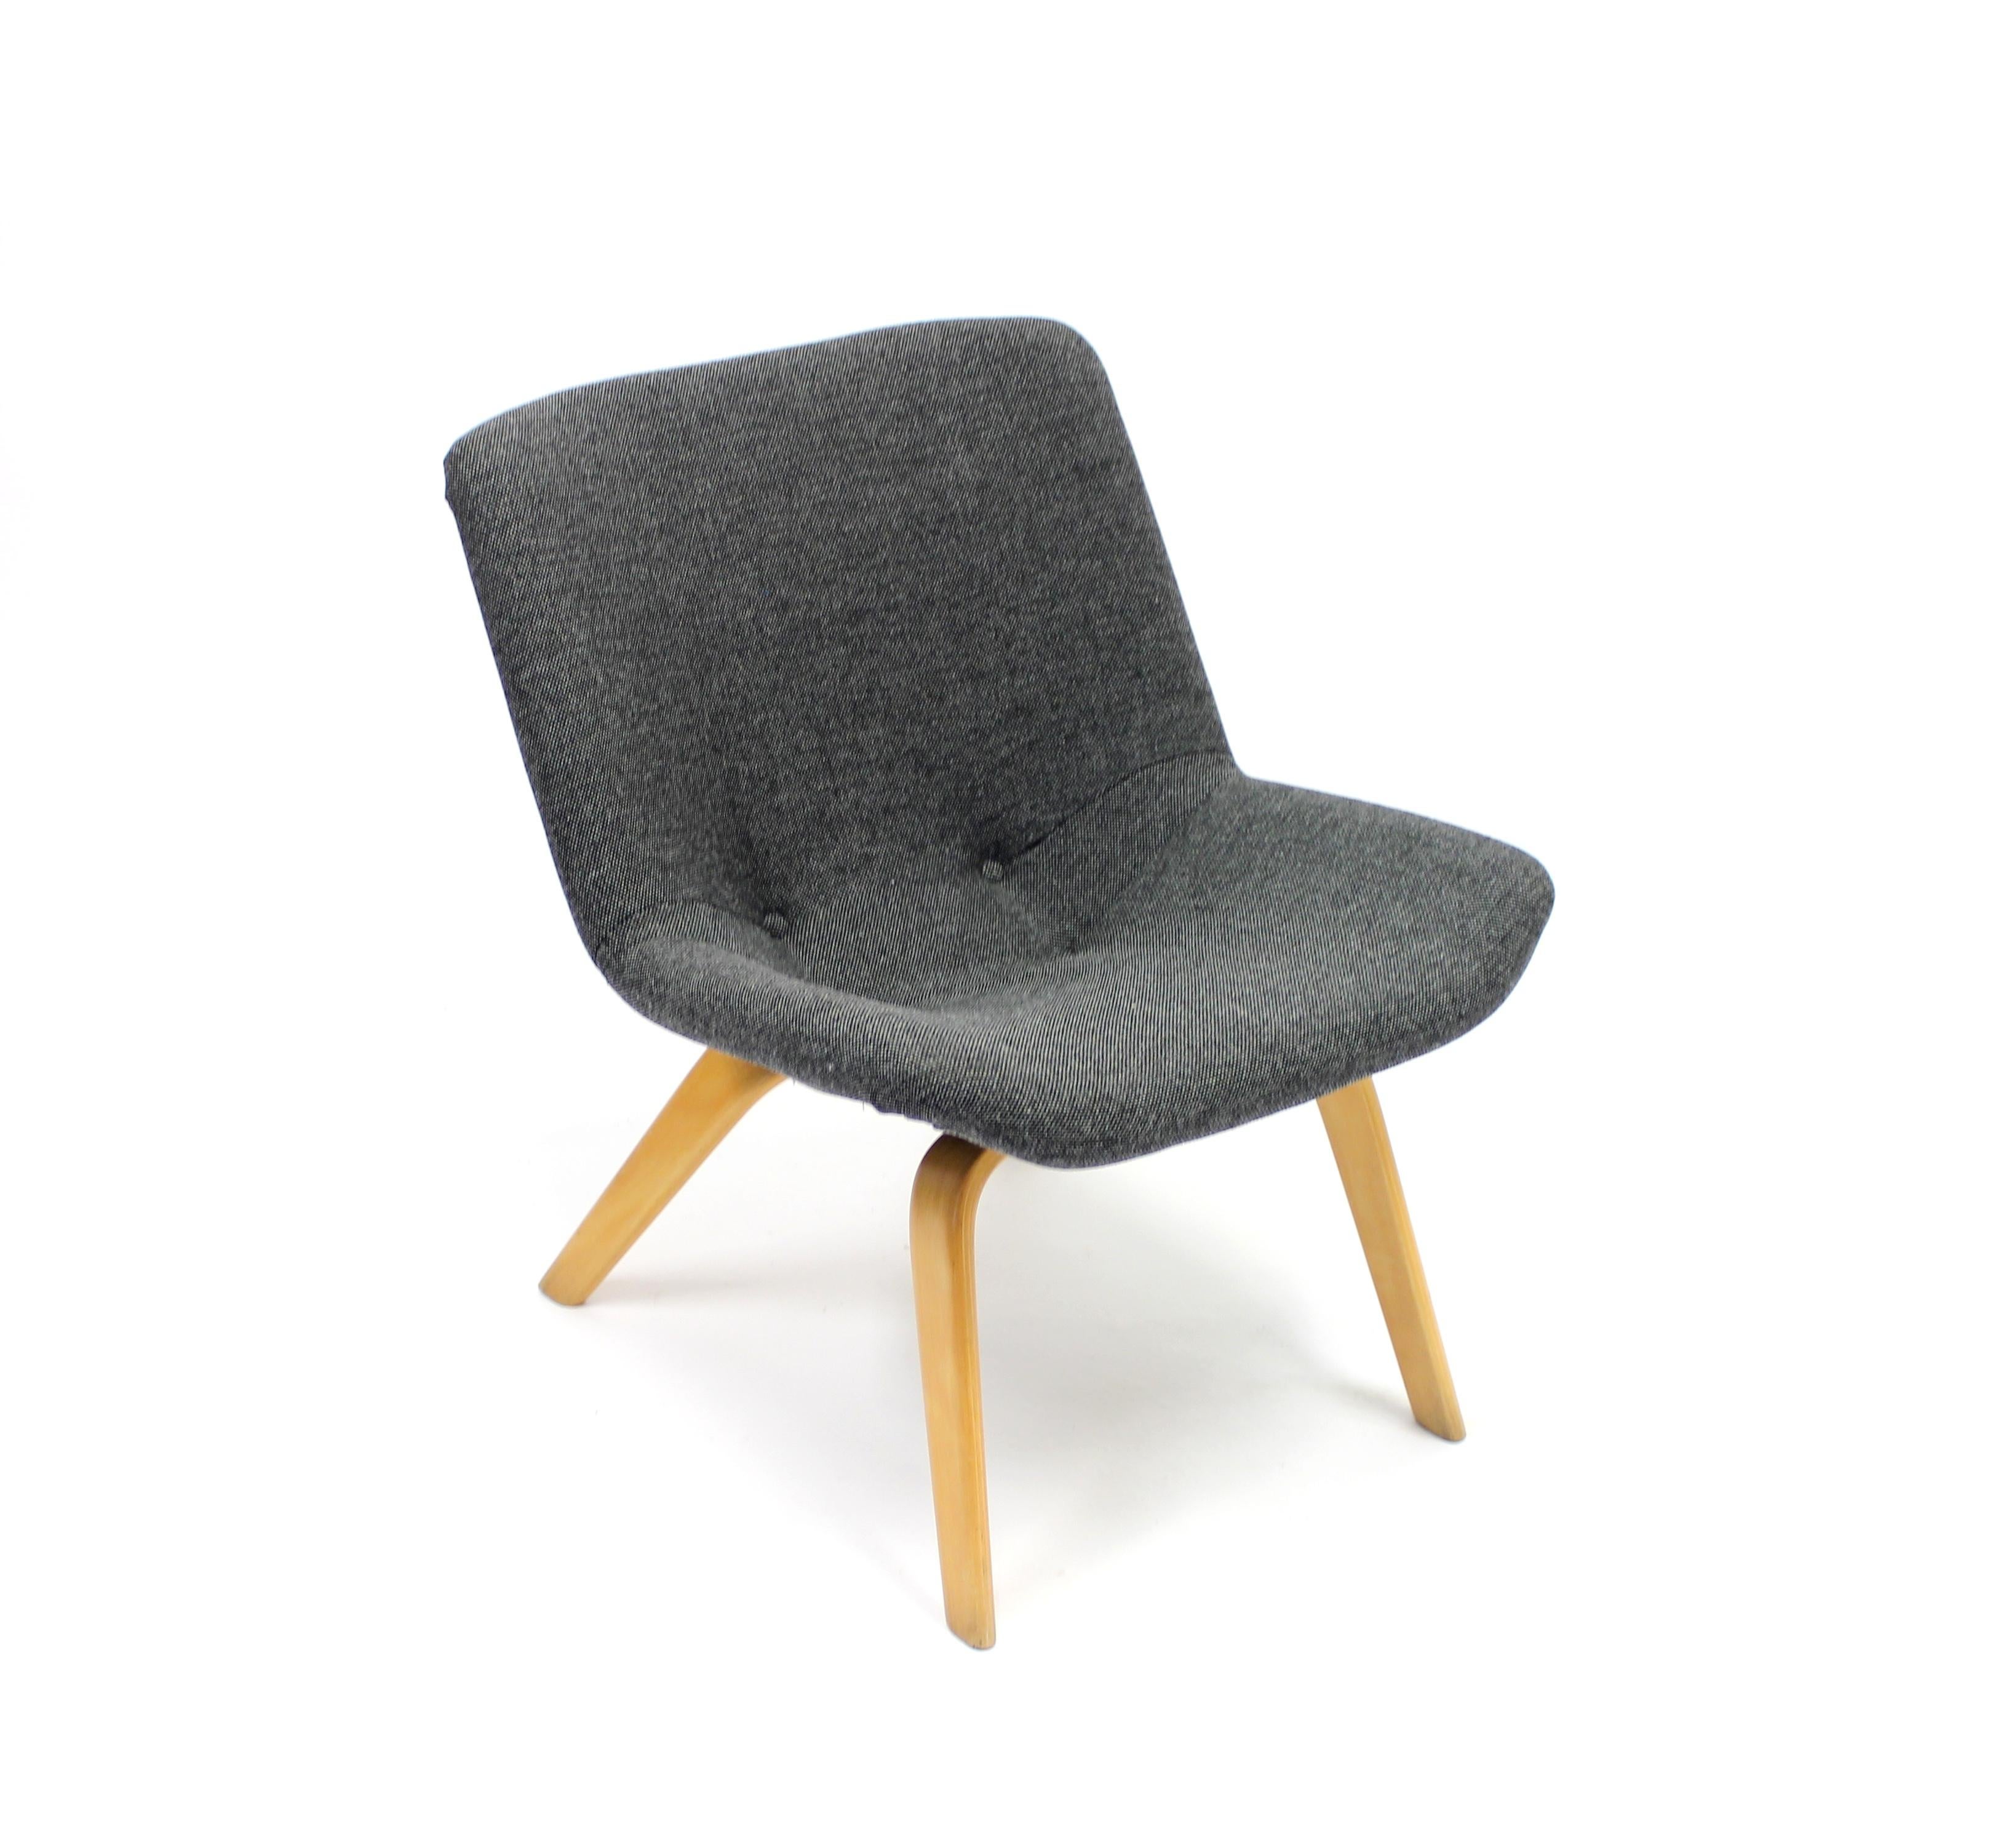 Sessel des finnischen Designers Carl Gustaf Hiort af Ornäs für den schwedischen Hersteller und Möbelhändler Gösta Westerberg aus den 1950er Jahren. Ordentliches und niedriges Modell. Sitz und Rückenlehne sind mit einem neuen grauen Kvadrat-Stoff